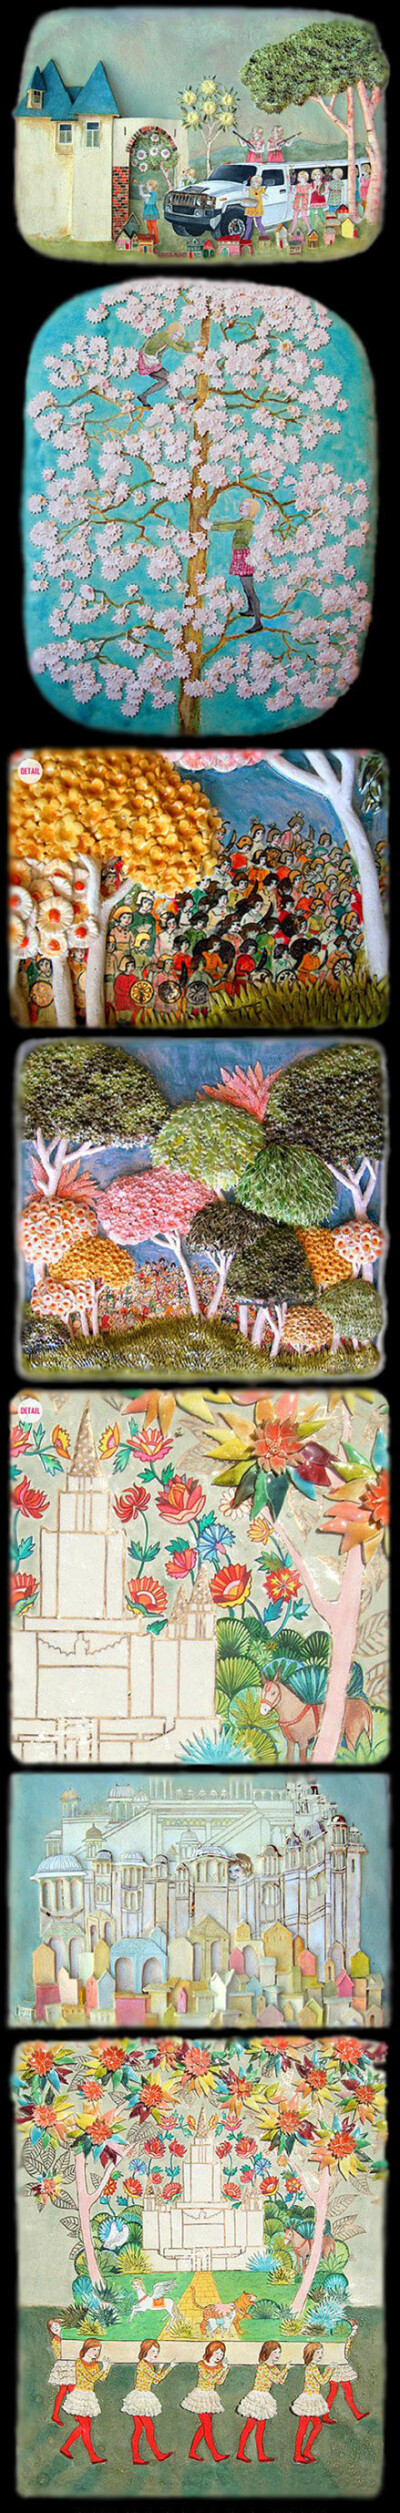 艺术家amanda smith，将油画绘制在瓷器当中，并且在作品中还会加上一些雕刻过的小粘土，以树叶和花朵造型居多，一起来看看这些令人惊叹的手工创意作品。